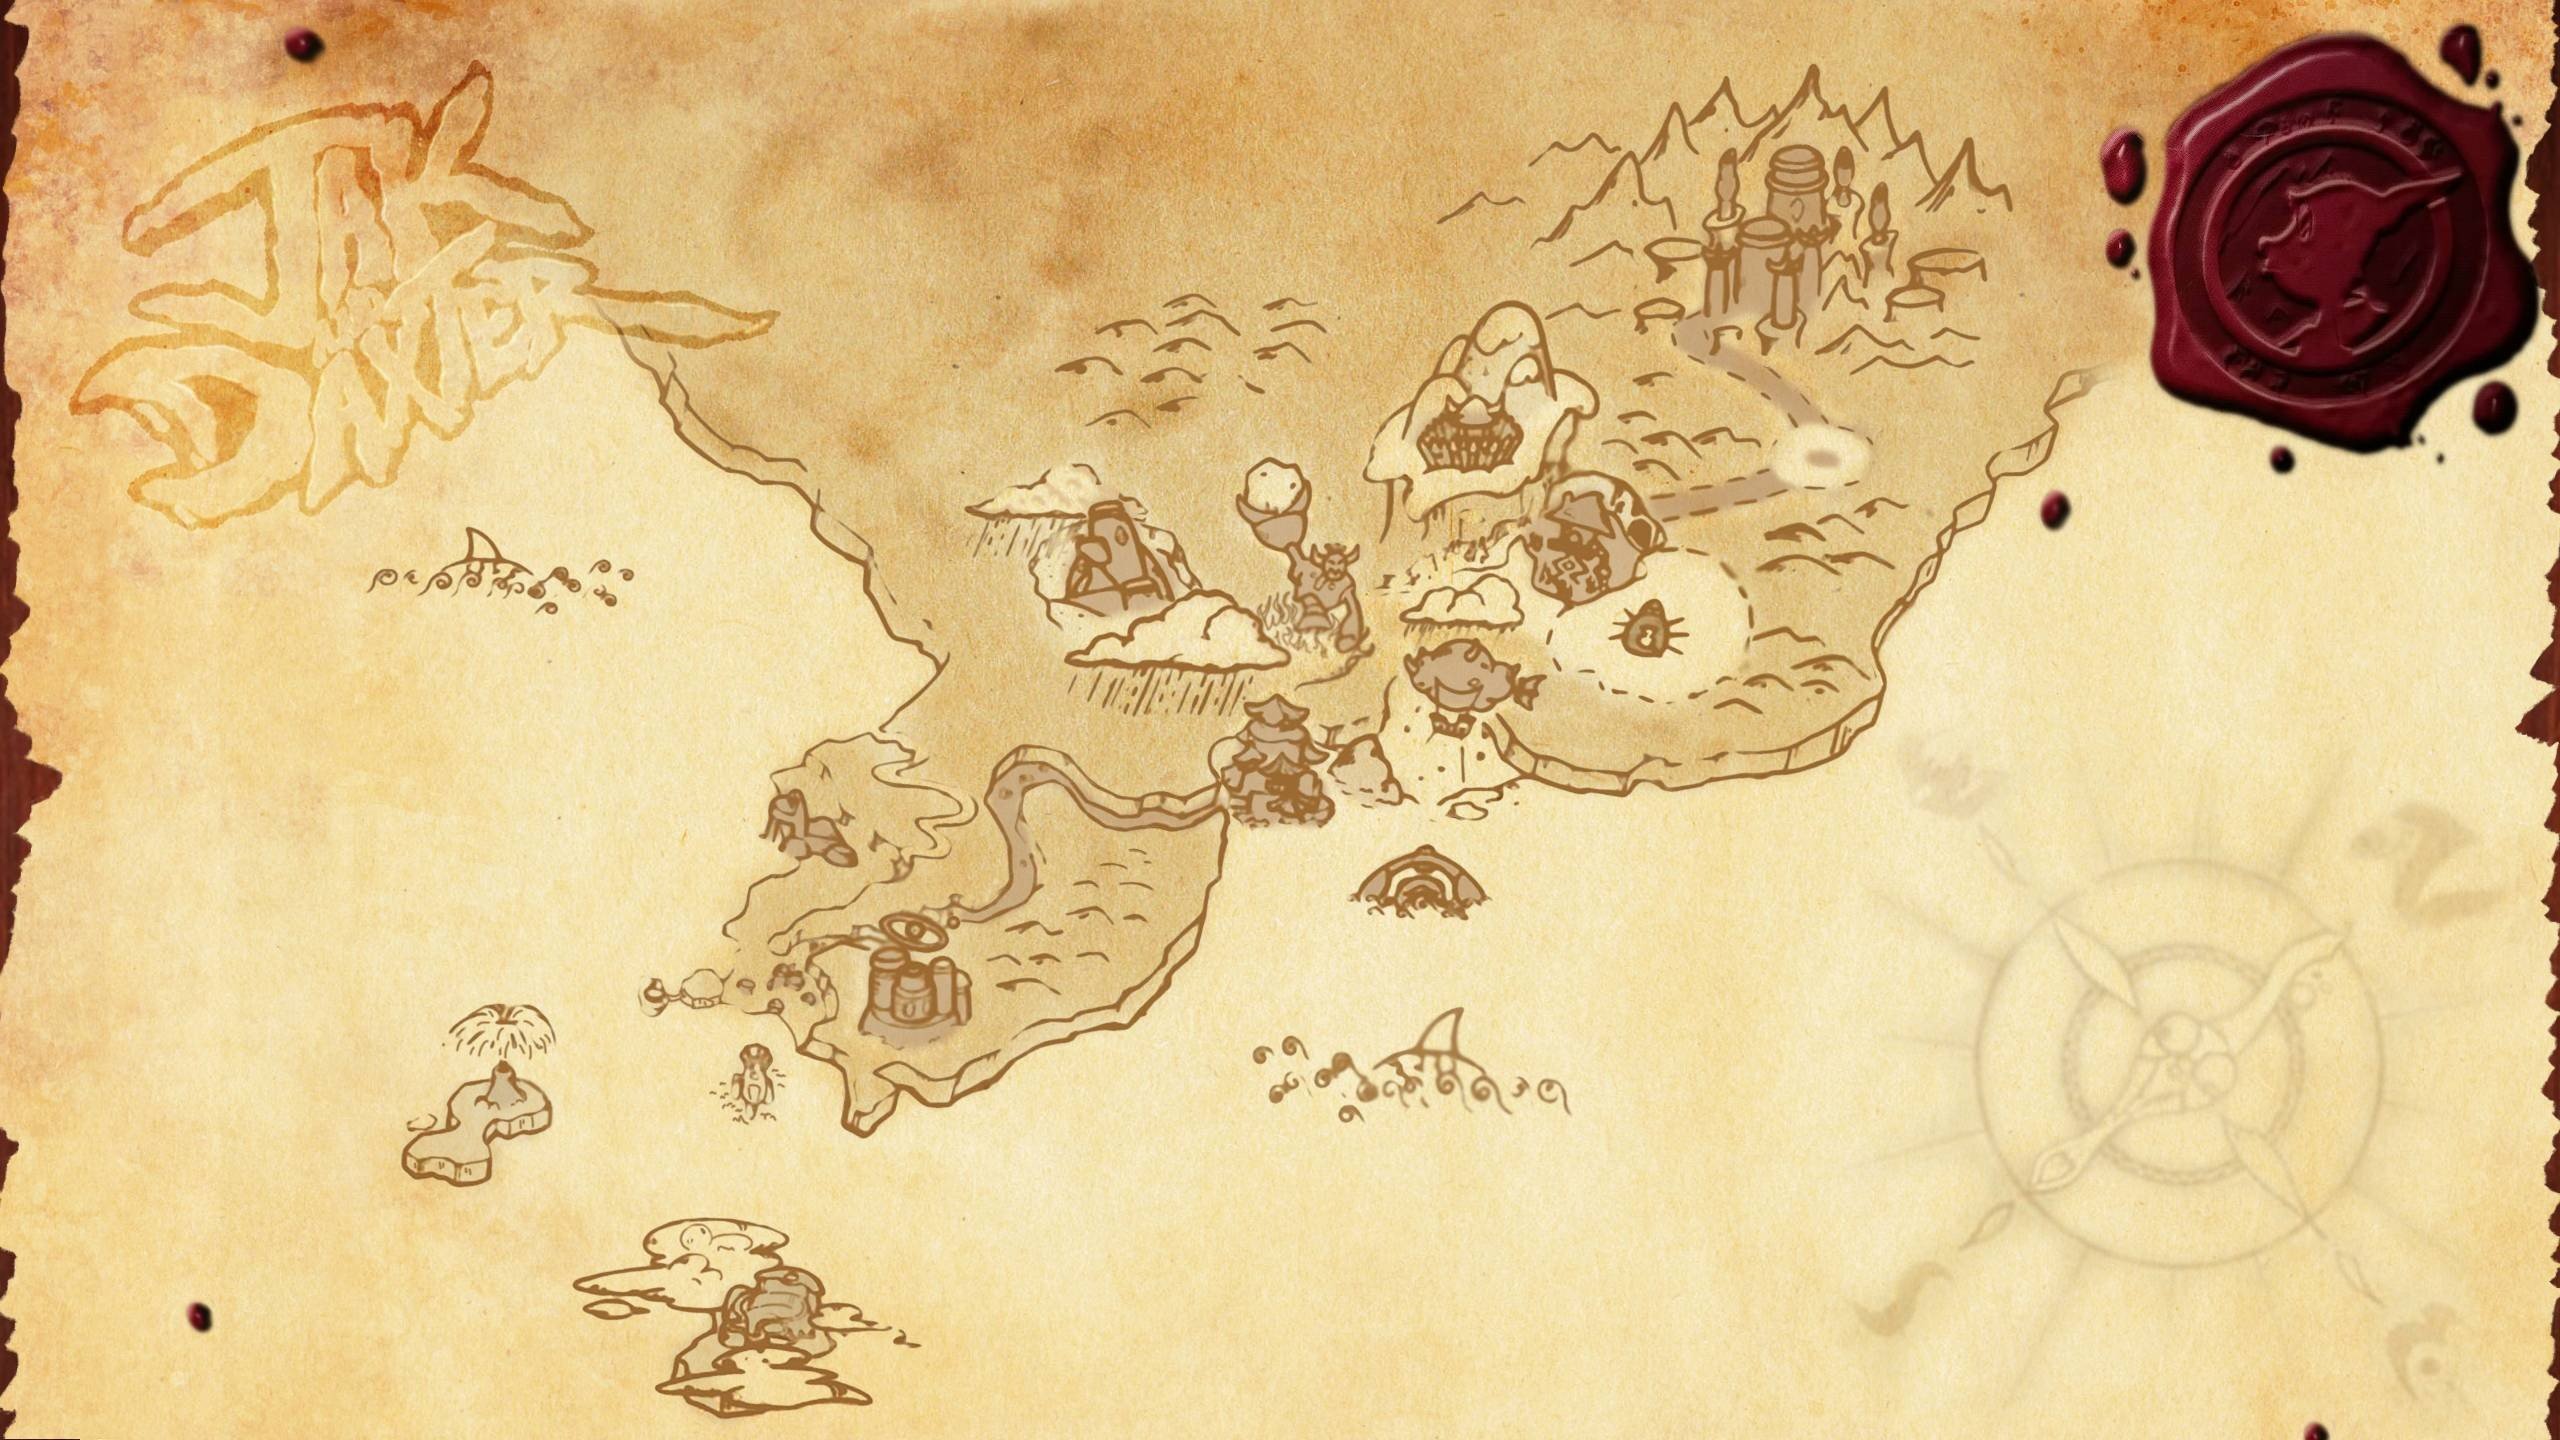 Jak & Daxter, Map, Video games Wallpaper